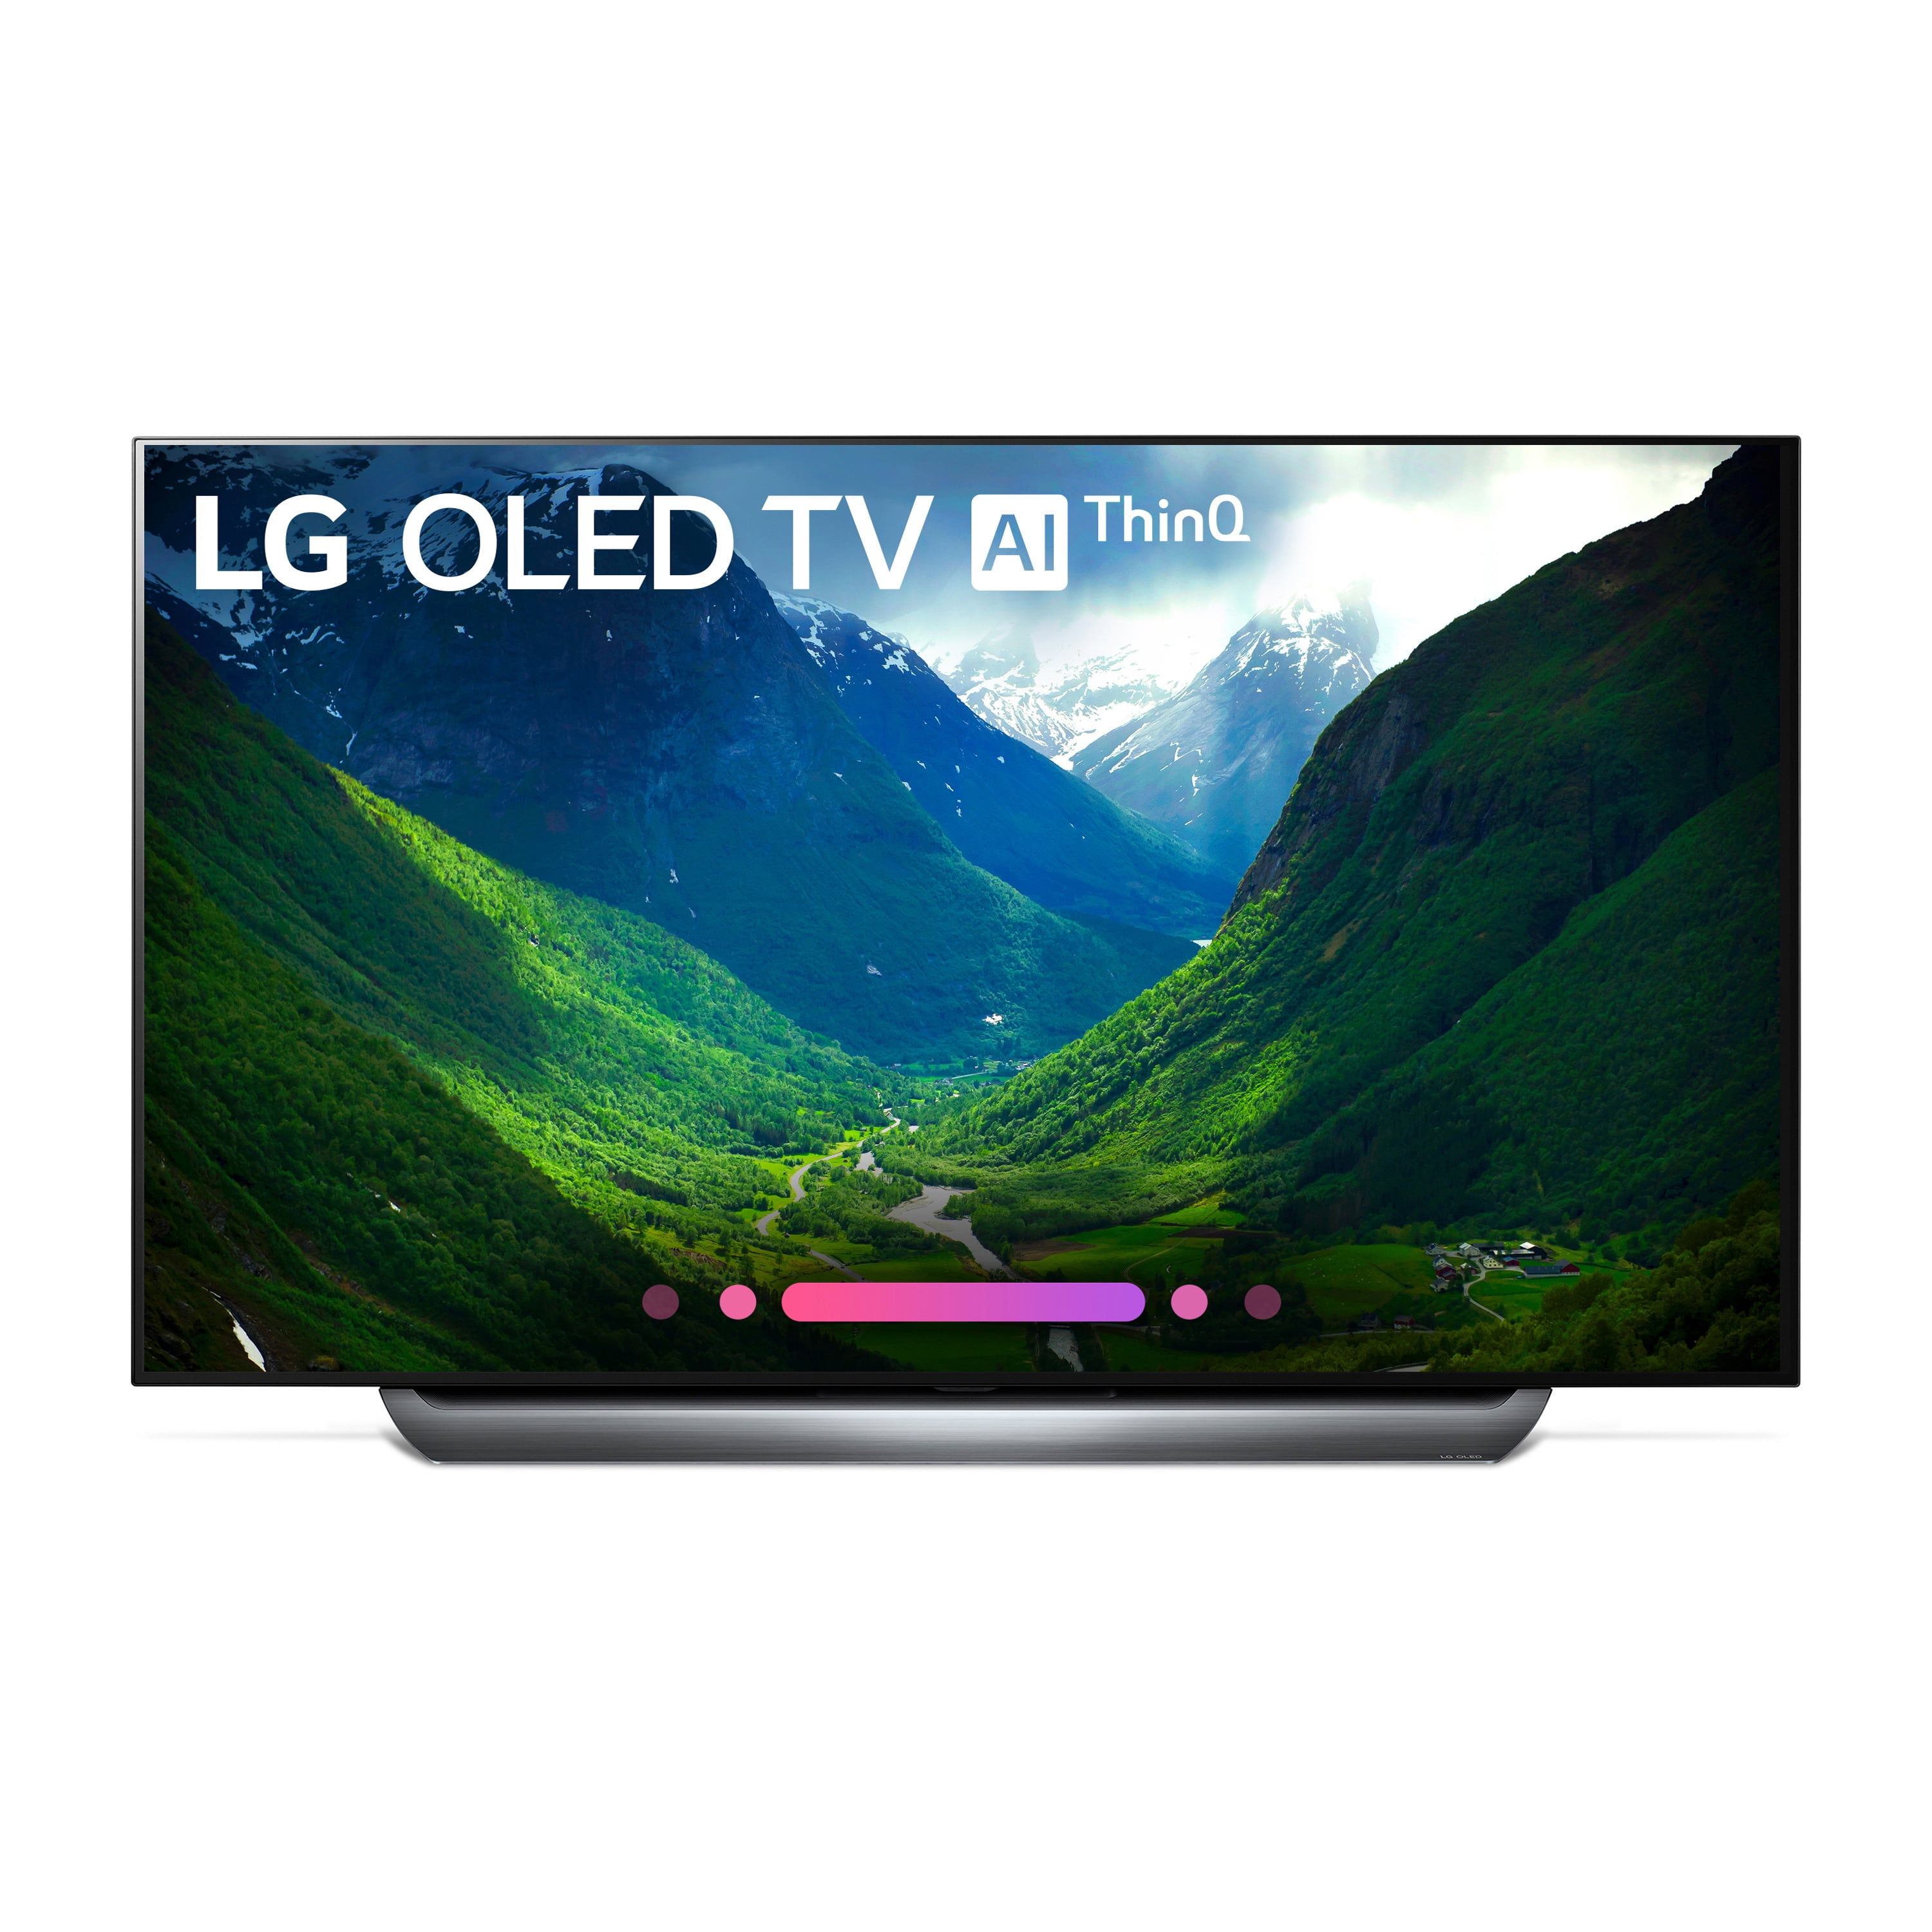 Качество телевизора lg. LG OLED 55. Телевизор LG олед 55. Телевизор LG олед 77. Телевизор 55 дюймов LG OLED.